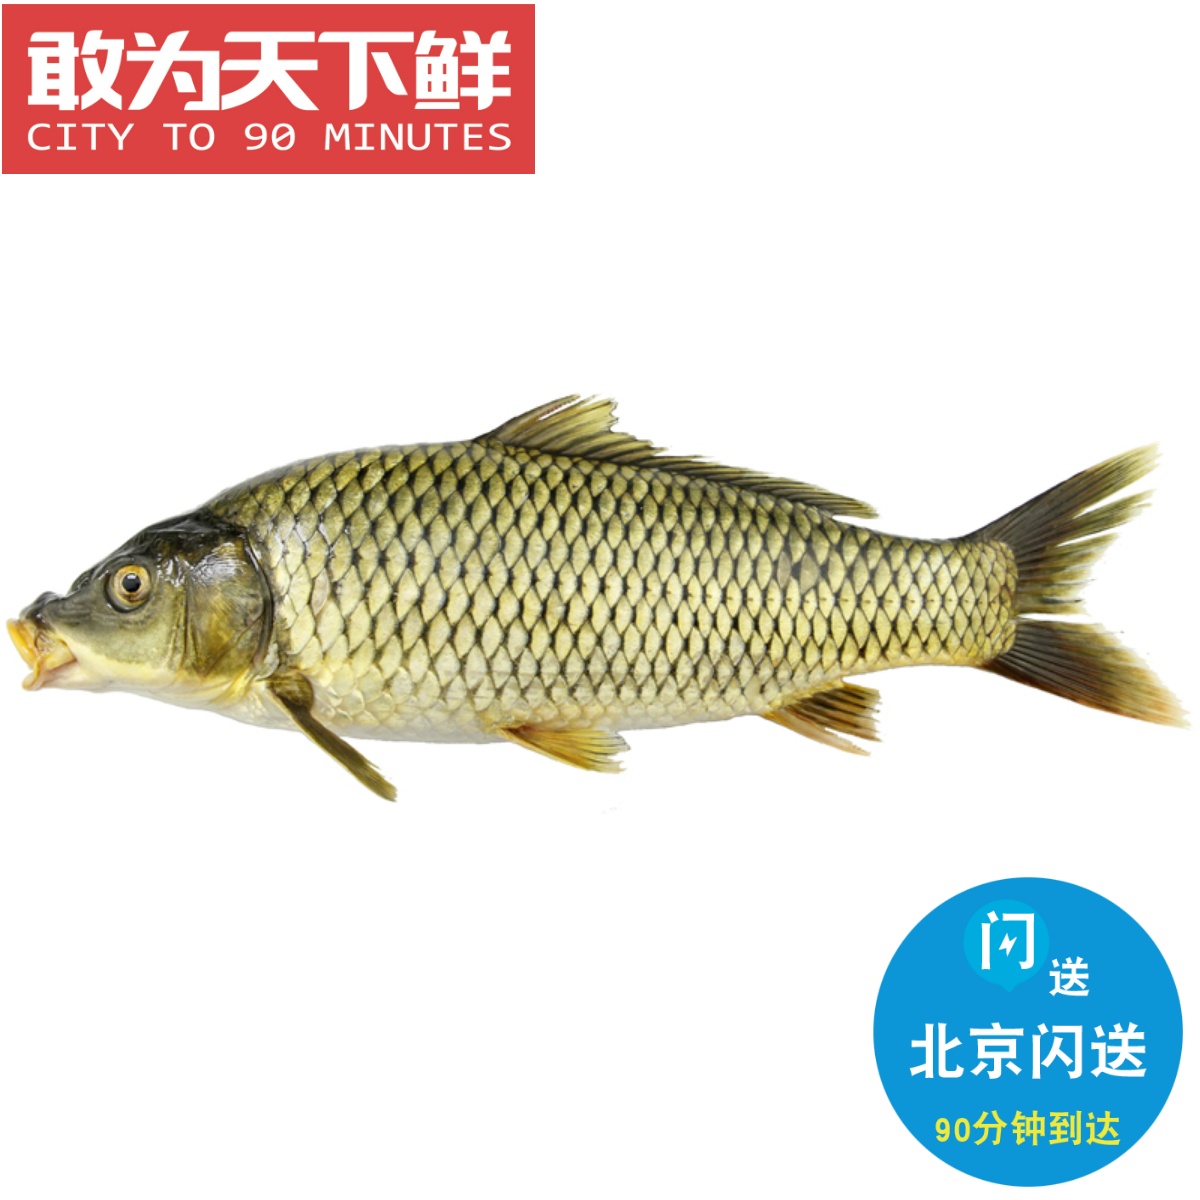 2-5斤可选 北京闪送 鲜活 鲤鱼 新鲜淡水鱼类